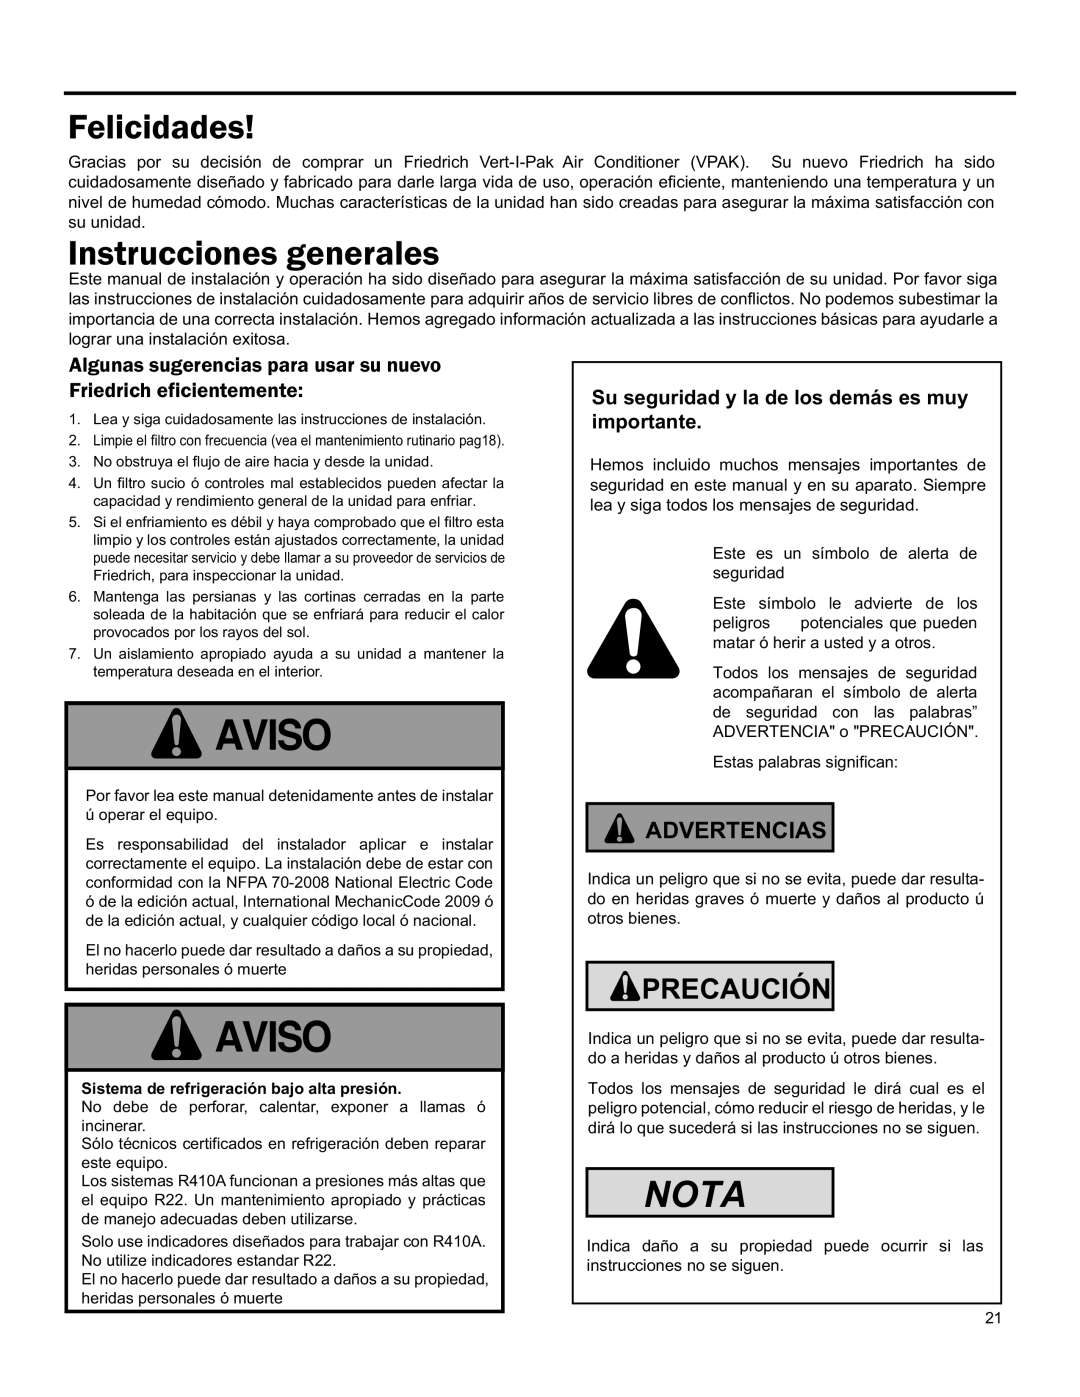 Friedrich 920-075-13 (1-11) operation manual Felicidades, Instrucciones Generales, Nota, Advertencias, Aviso, Precaución 